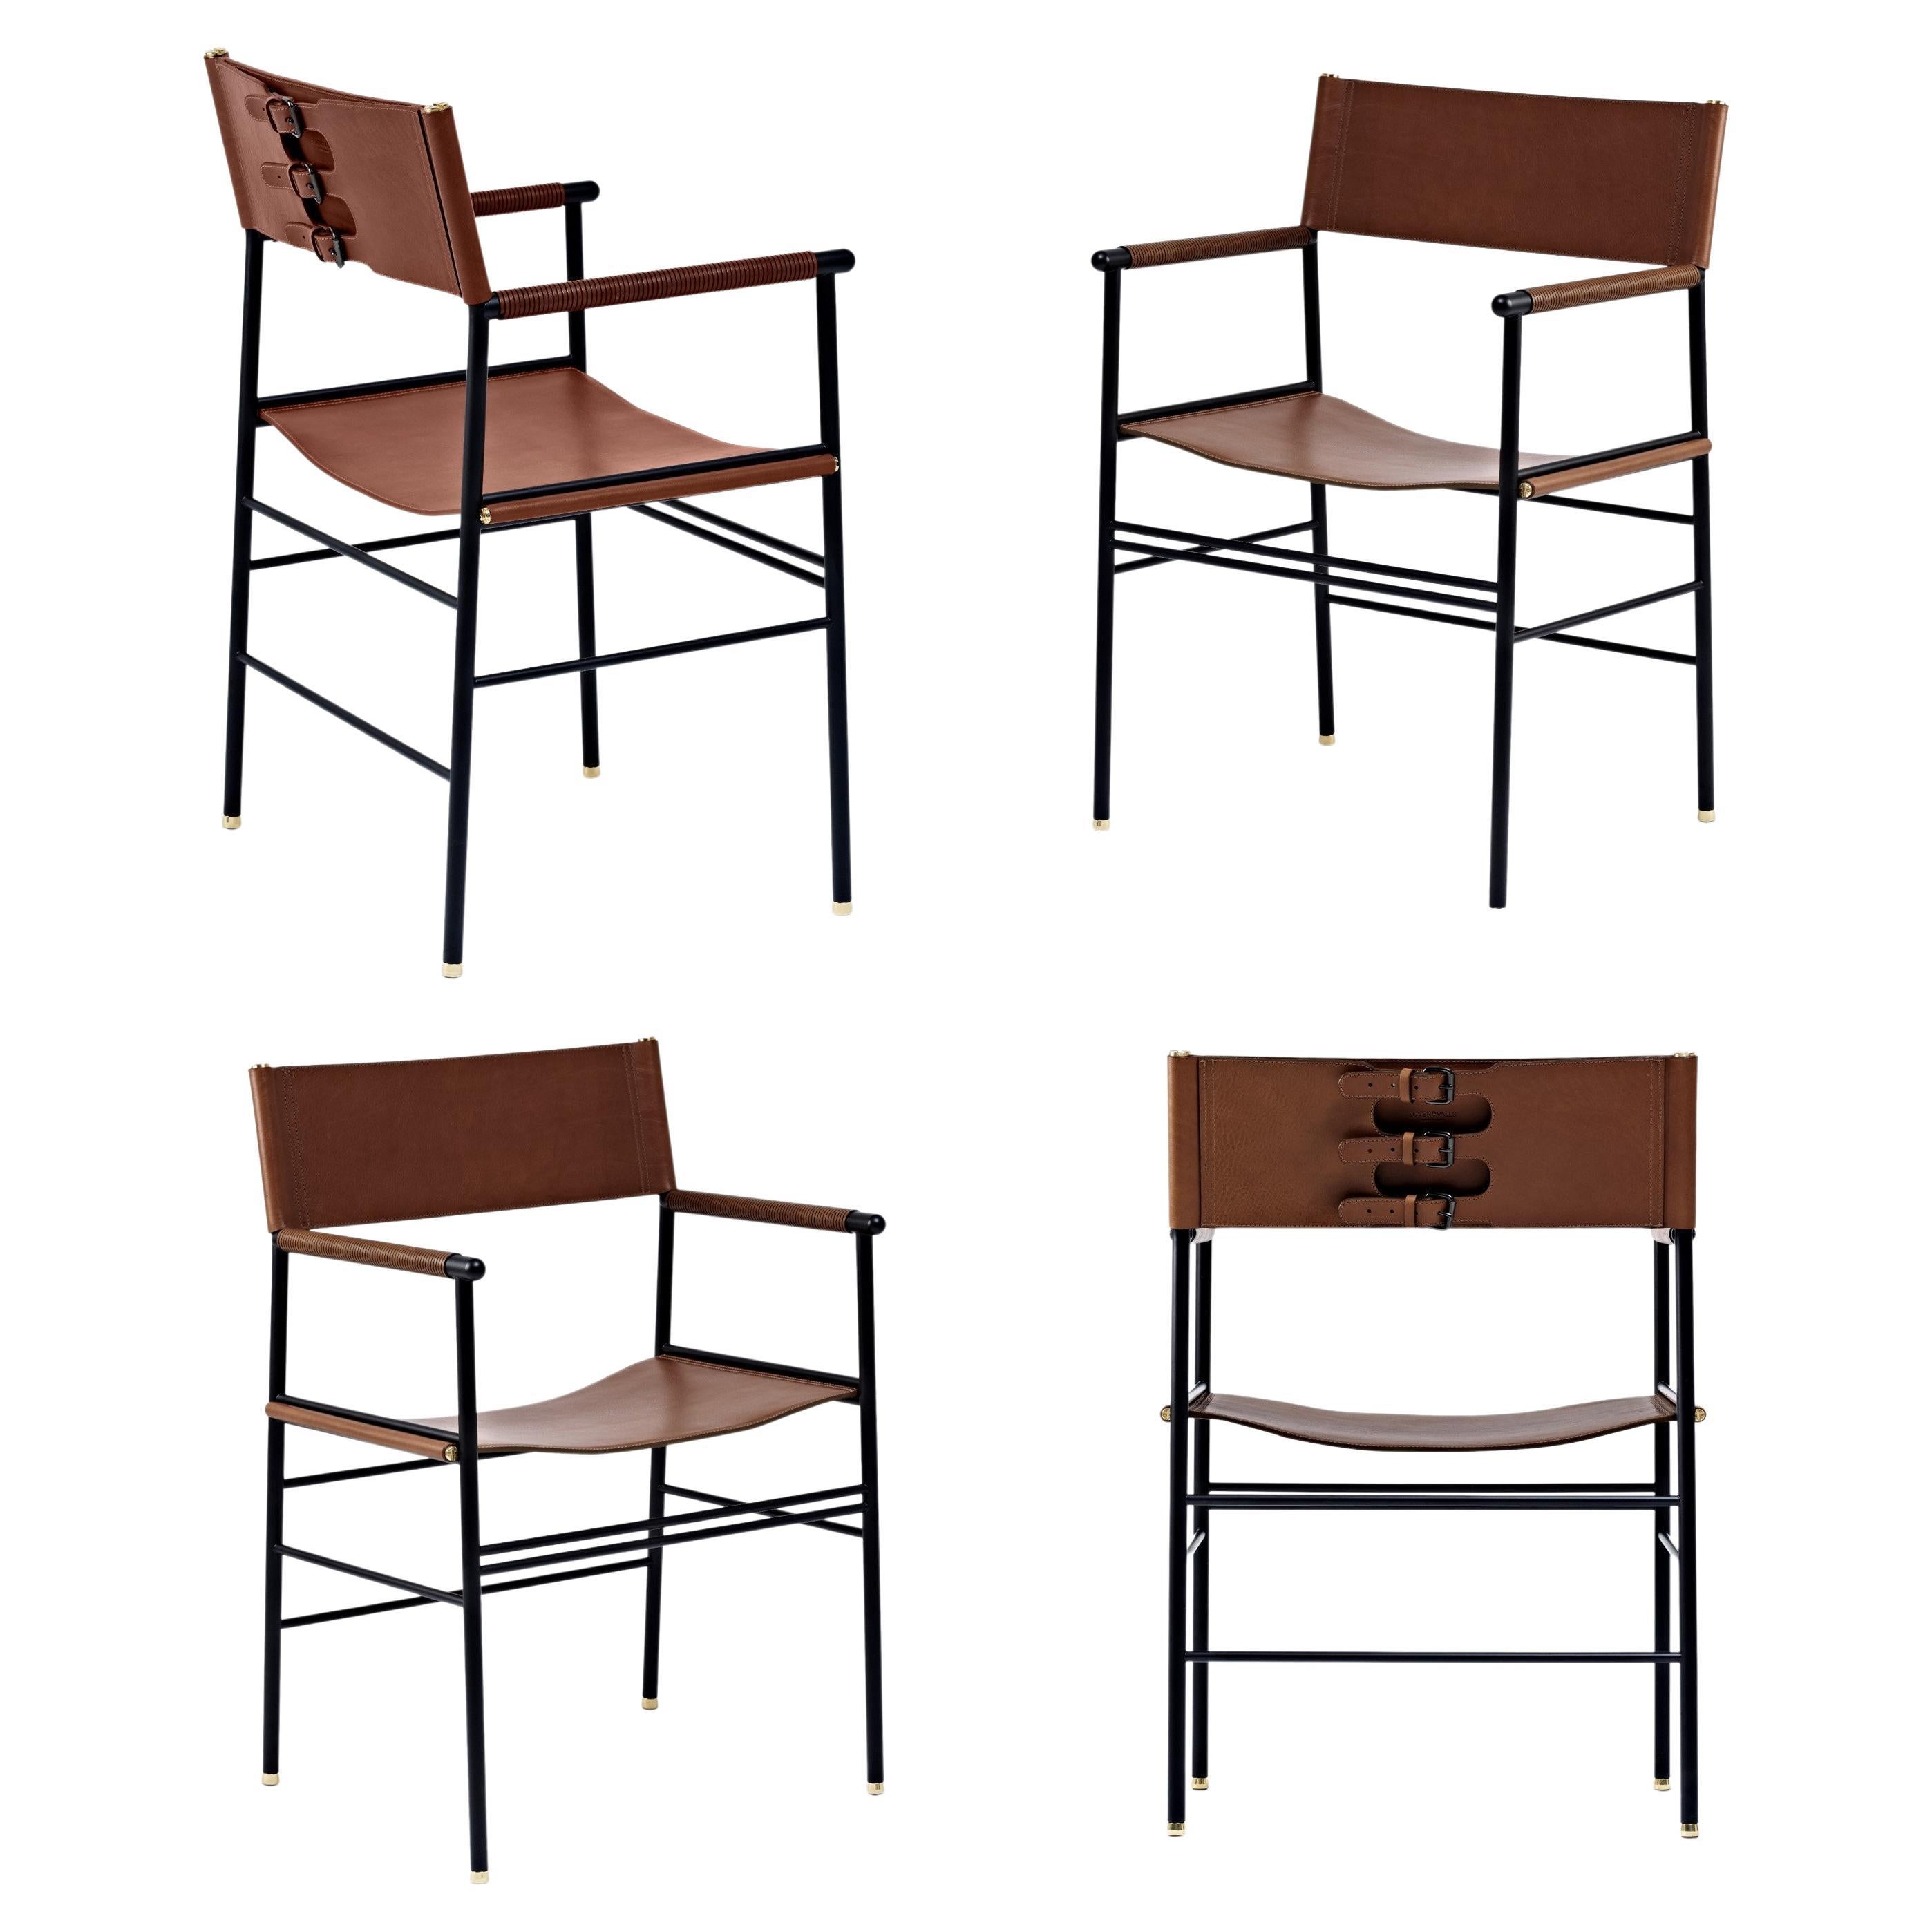 Ensemble de 4 fauteuils artisanaux contemporains en cuir marron foncé et métal en caoutchouc noir